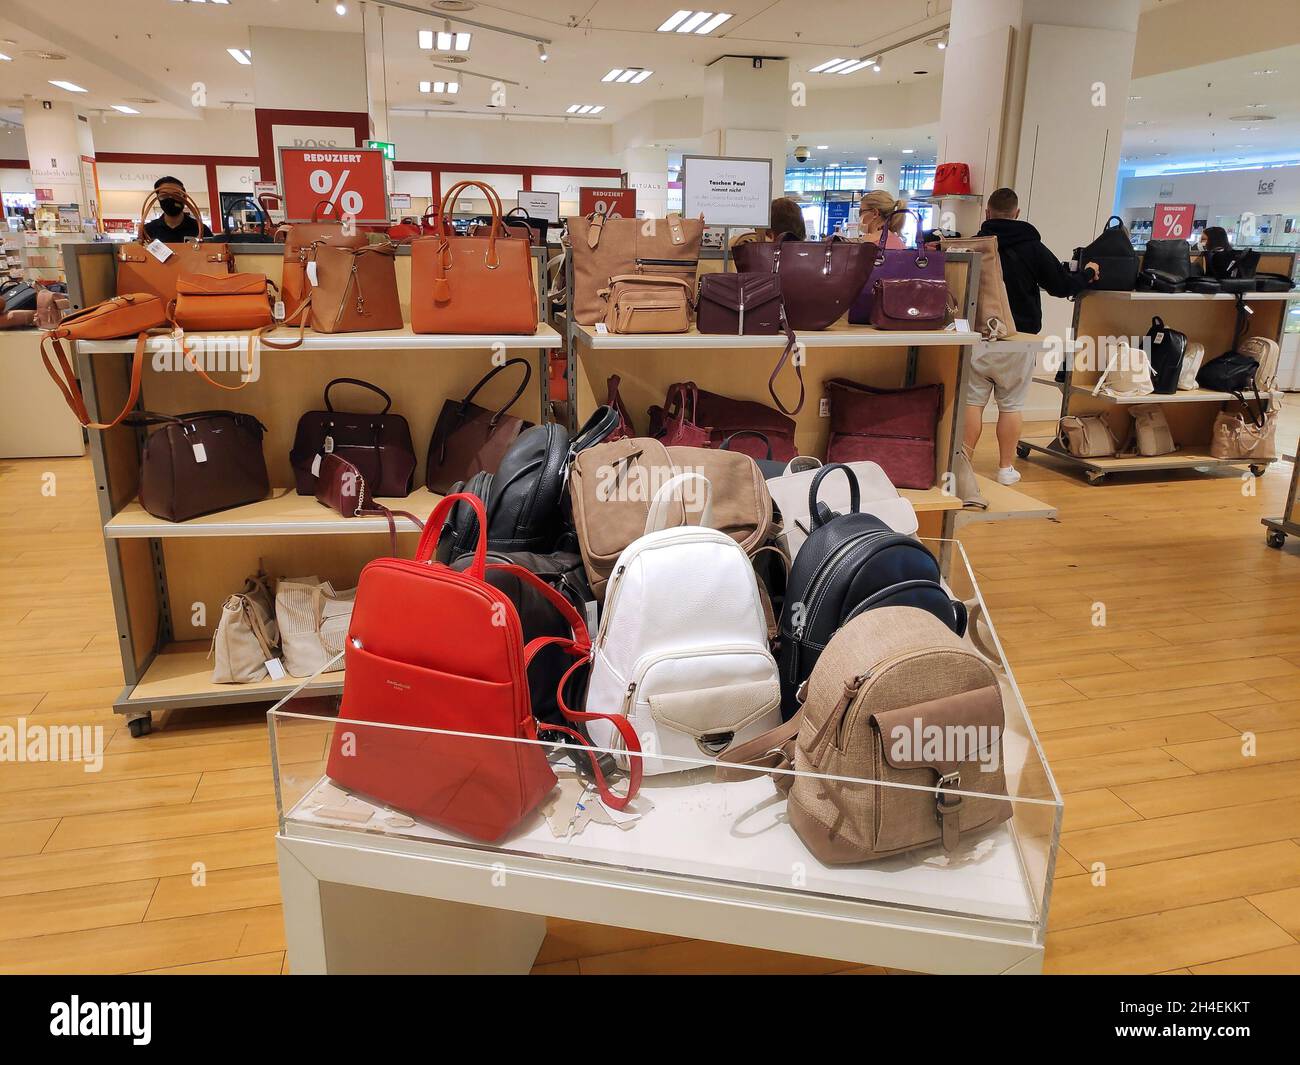 COLONIA, ALEMANIA - 19 DE SEPTIEMBRE de 2021: Bolsos y carteras de mujeres  con descuento en una tienda de departamentos de Colonia, Alemania  Fotografía de stock - Alamy